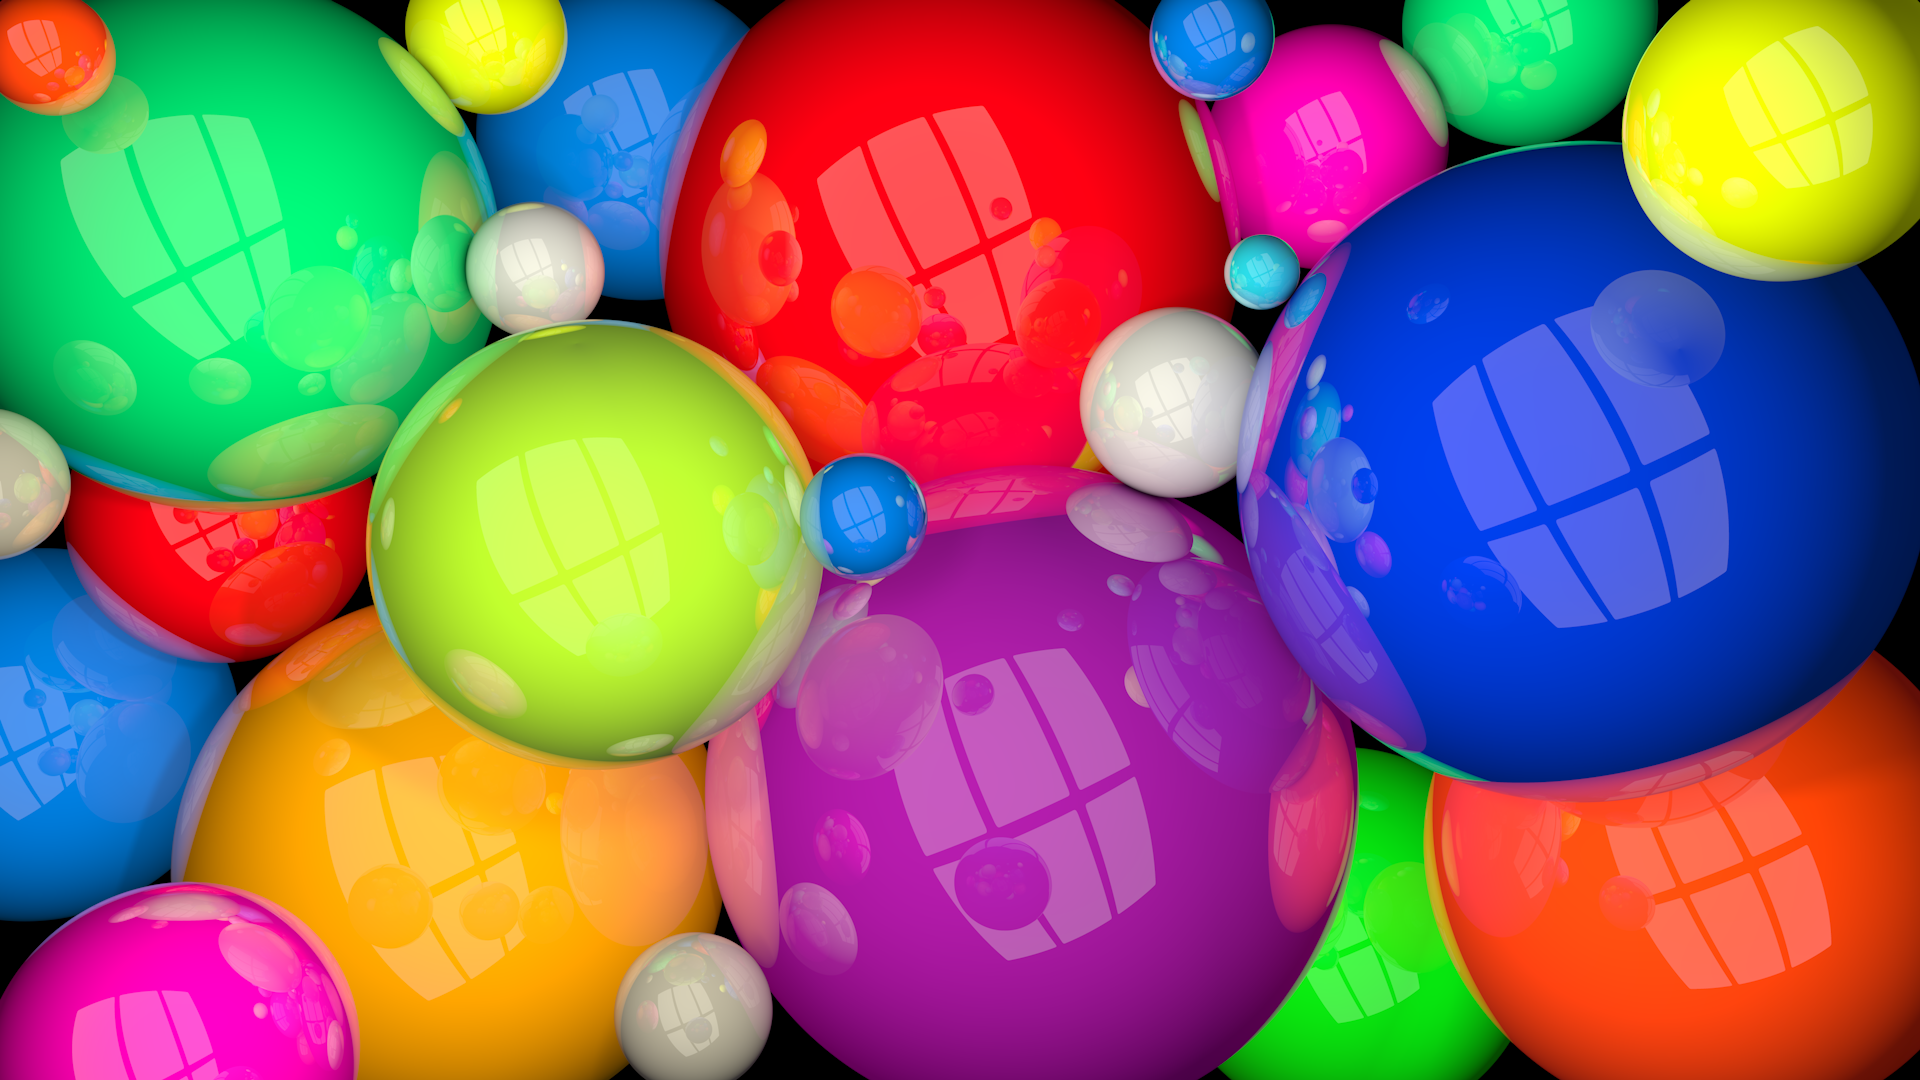 Заставки на телефон шары. Яркие воздушные шары. Яркий фон. Разноцветные шарики. Картинки на рабочий стол шарики.